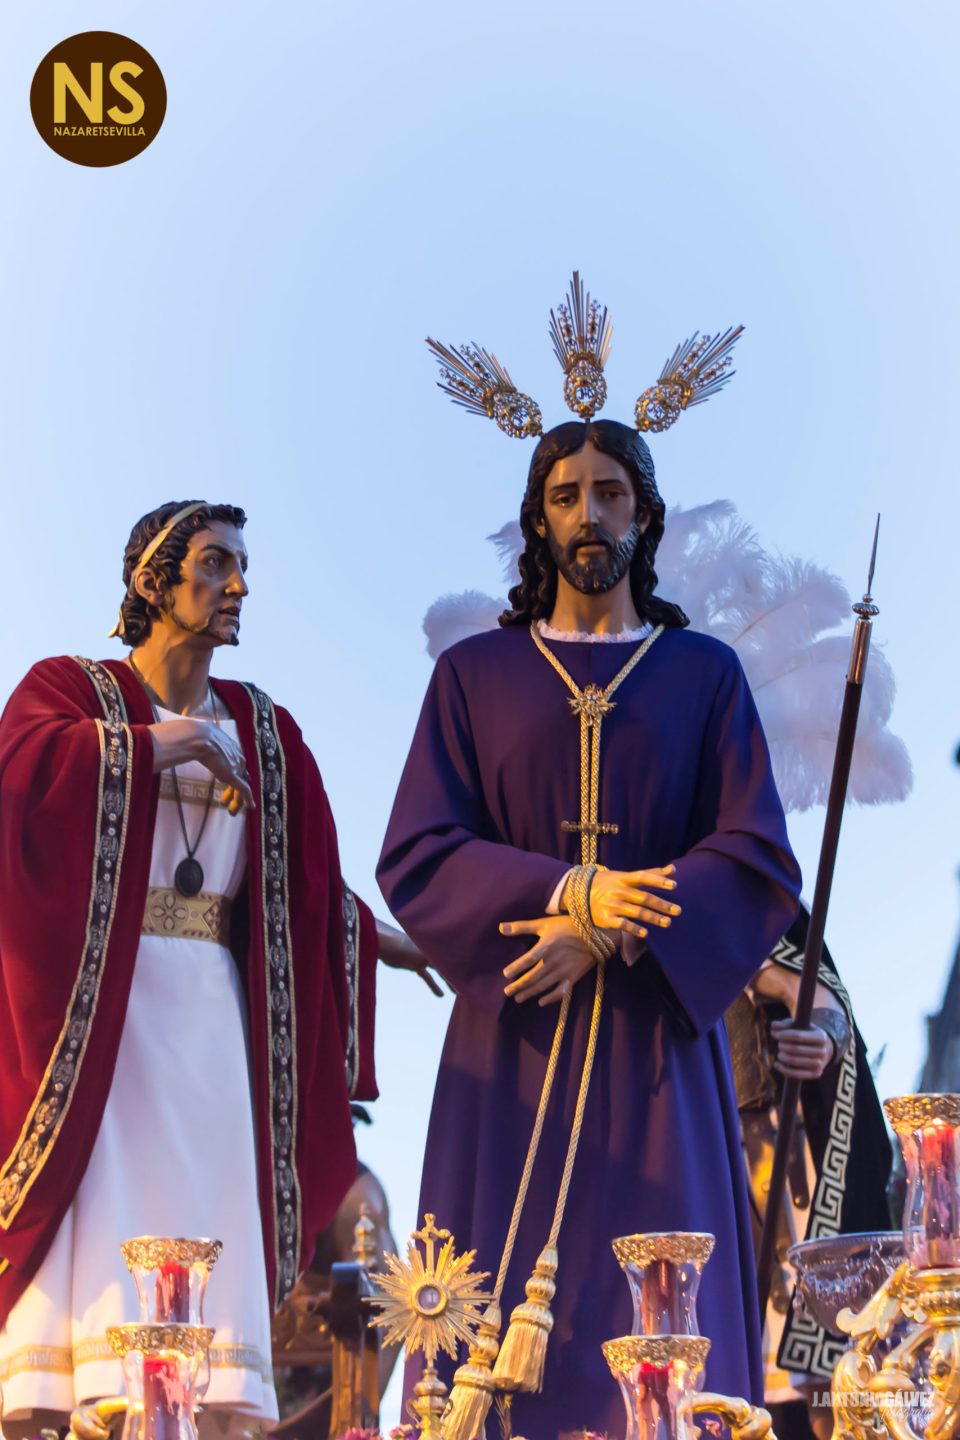 El Cautivo de Torreblanca saldrá en viacrucis por el LX aniversario de la parroquia